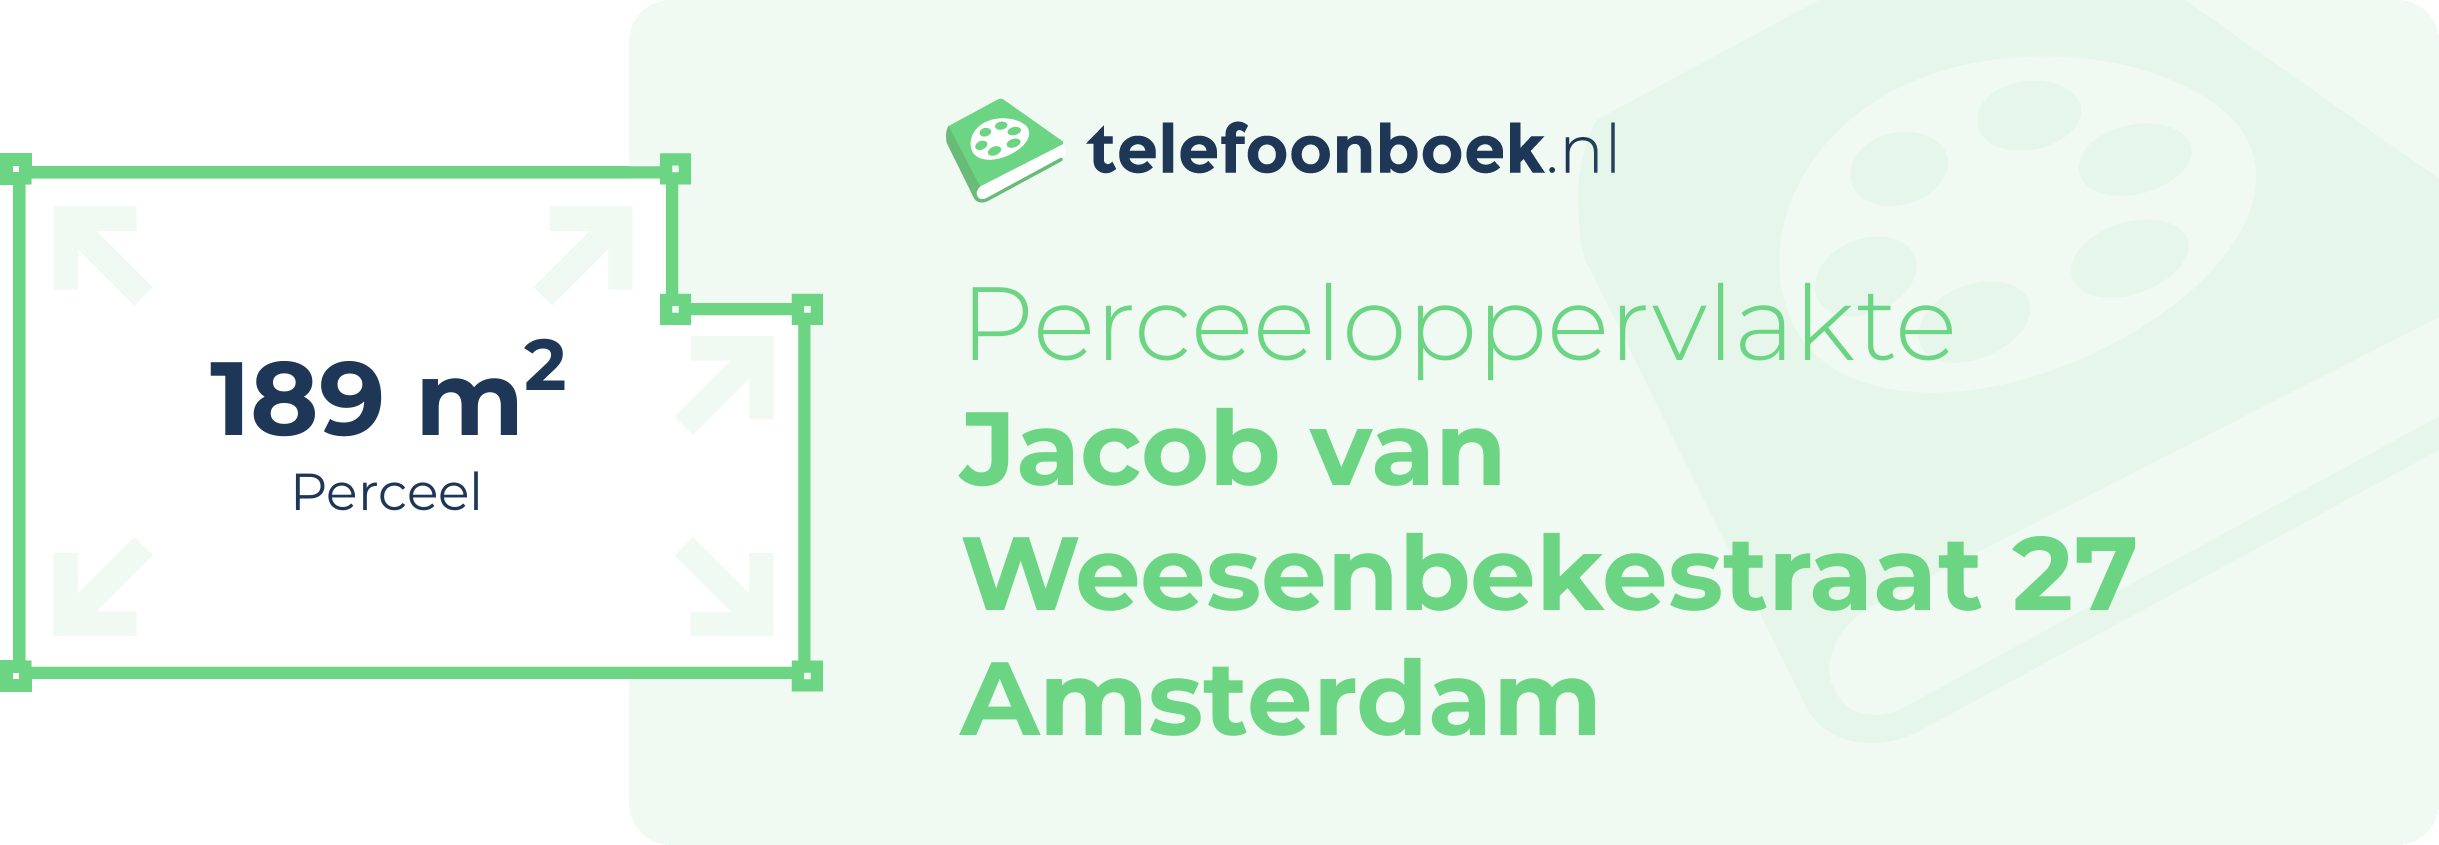 Perceeloppervlakte Jacob Van Weesenbekestraat 27 Amsterdam